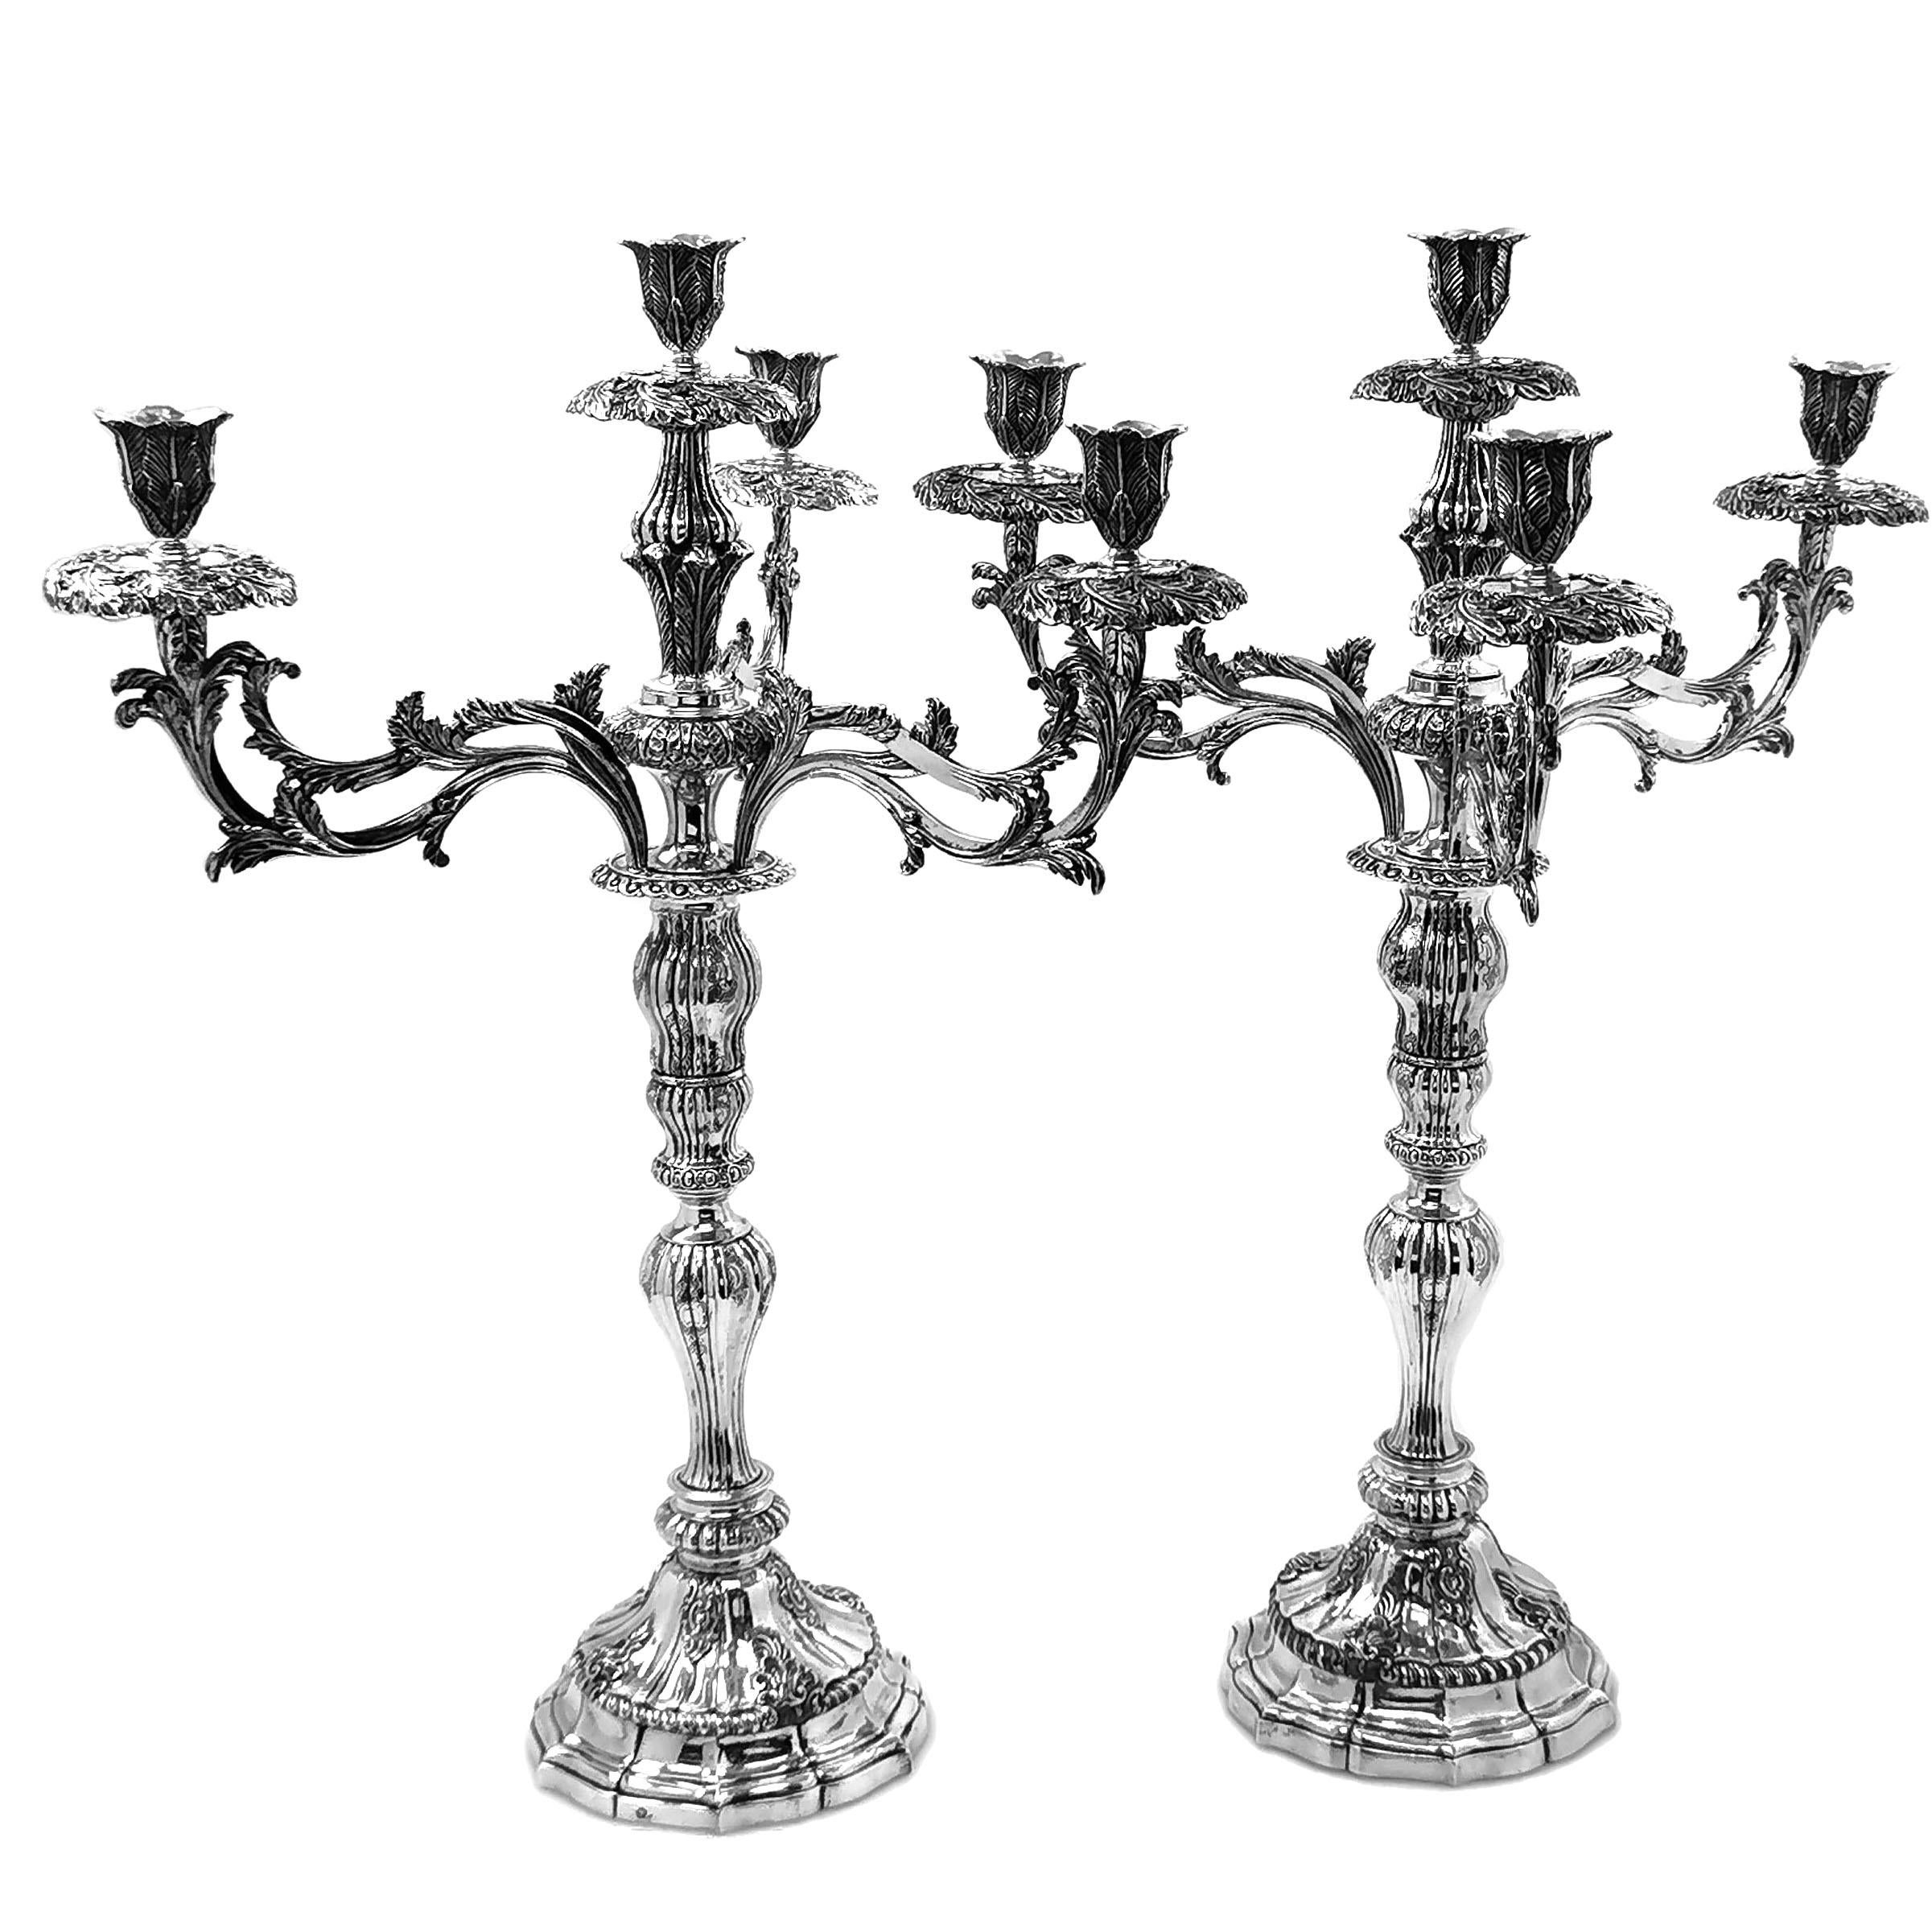 Ein seltenes, prächtiges Paar antiker portugiesischer Kandelaber aus massivem Silber des 18. Jahrhunderts mit vier Leuchtern und abnehmbaren Zweigen, die als einzelne Kerzenständer verwendet werden können. Die Kronleuchter und Tropfschalen sind mit